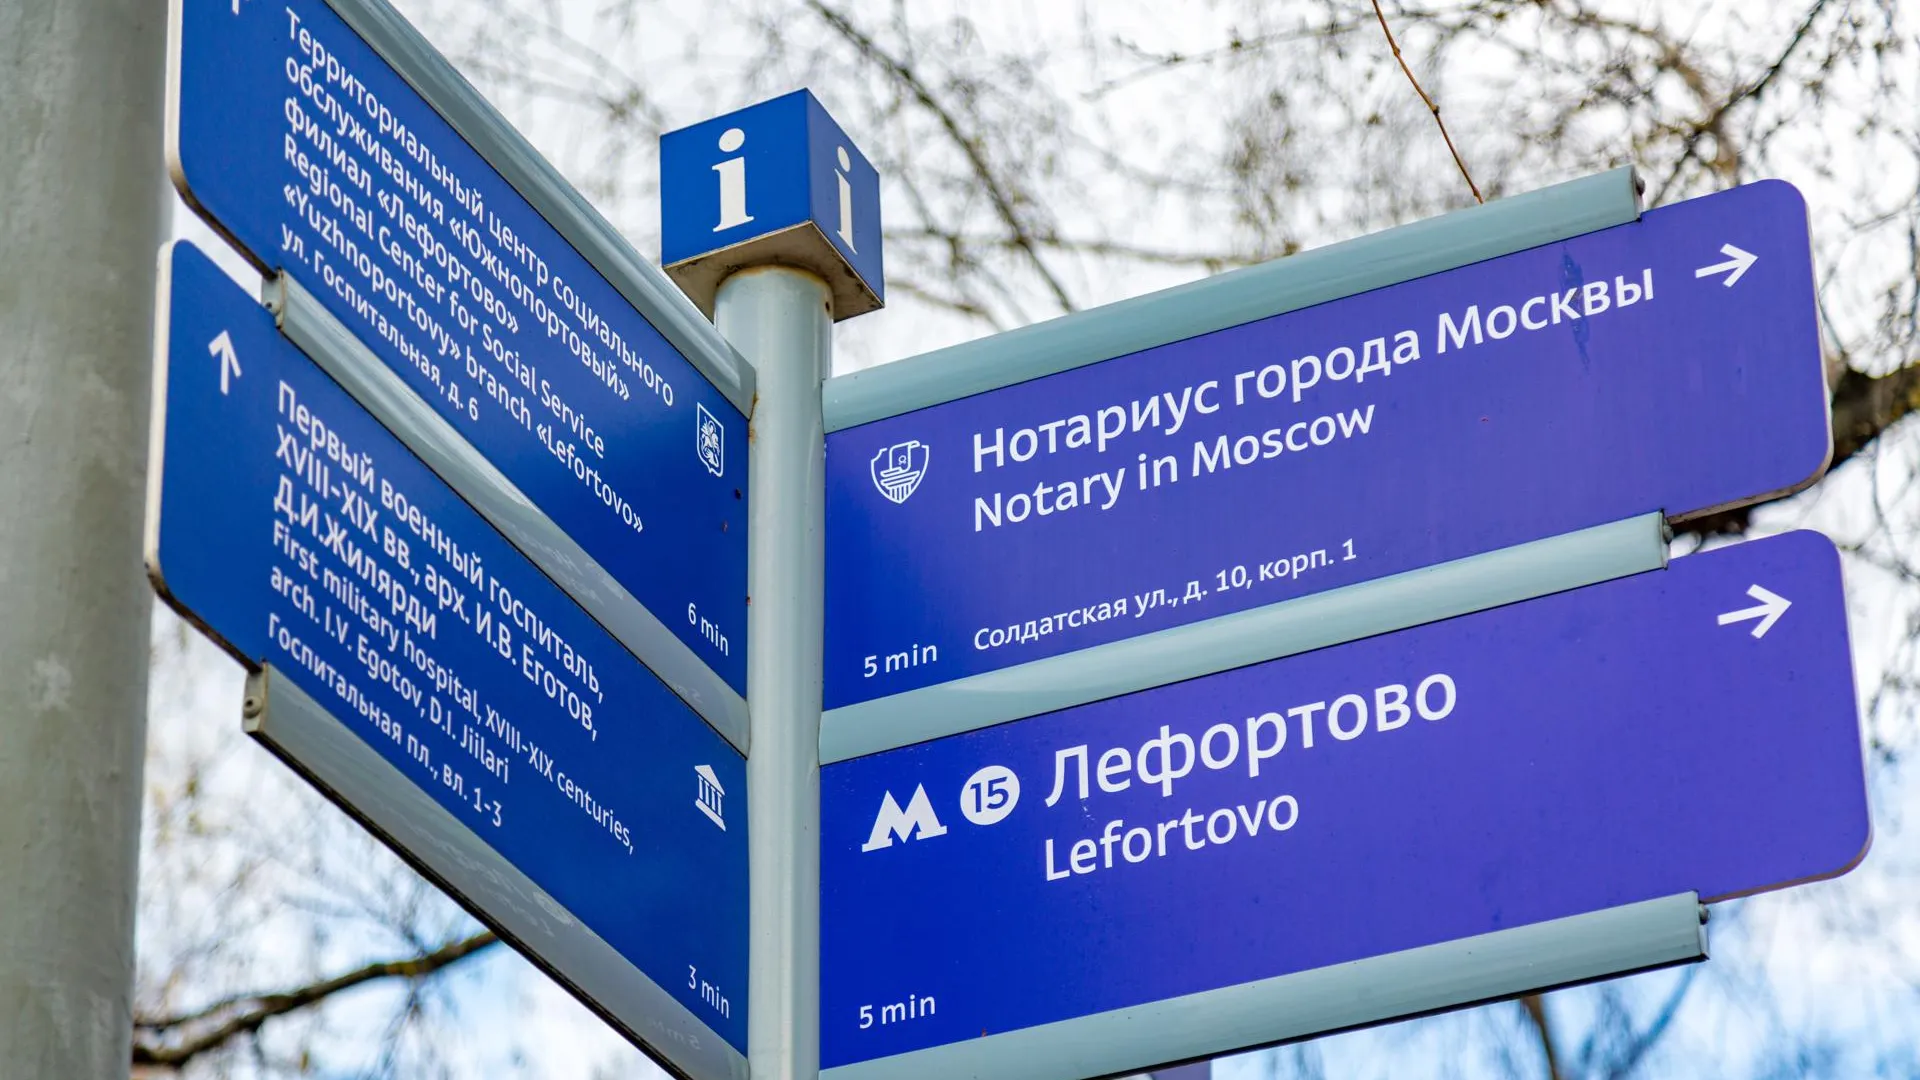 Новые указатели к станциям метро появились в столице